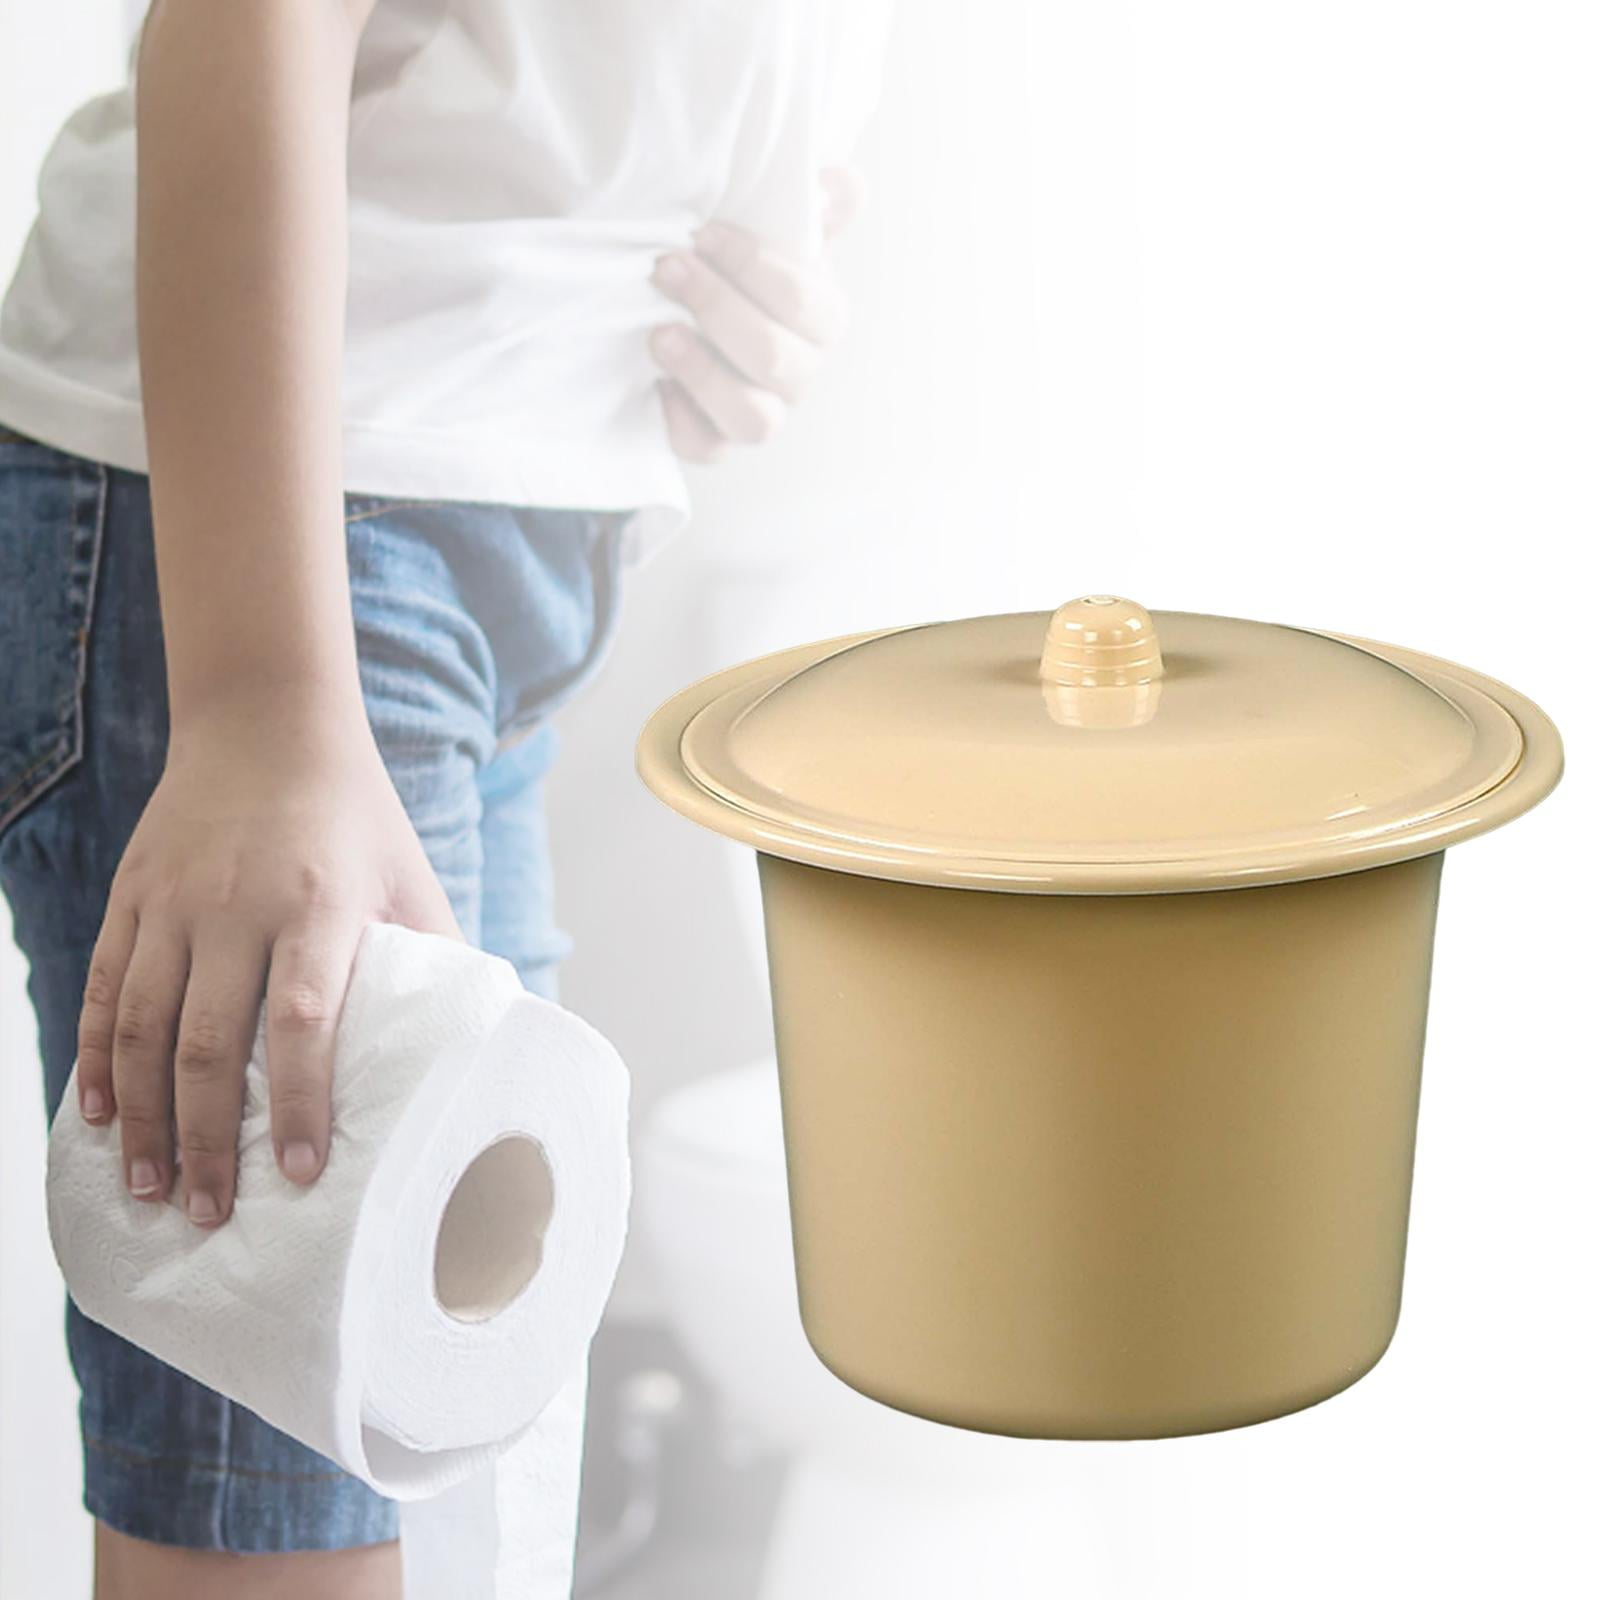 TOPBATHY Spittoon Portable avec Couvercle et poignée, pour Toilette